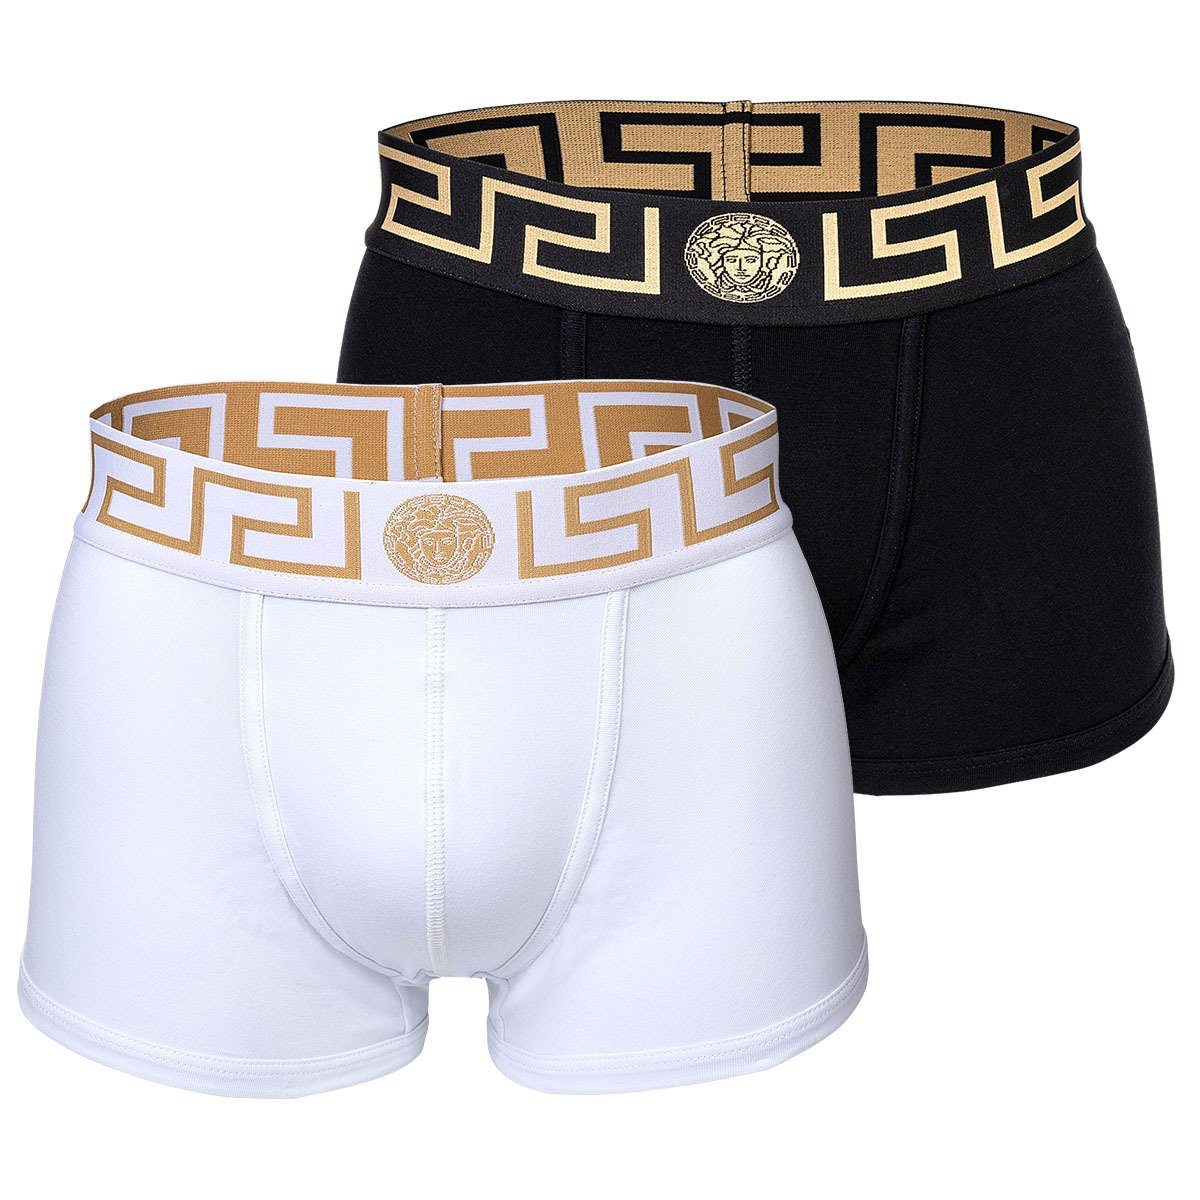 Versace Boxer Herren Boxer Shorts, 2er Pack - Trunk Schwarz/Weiß/Gold